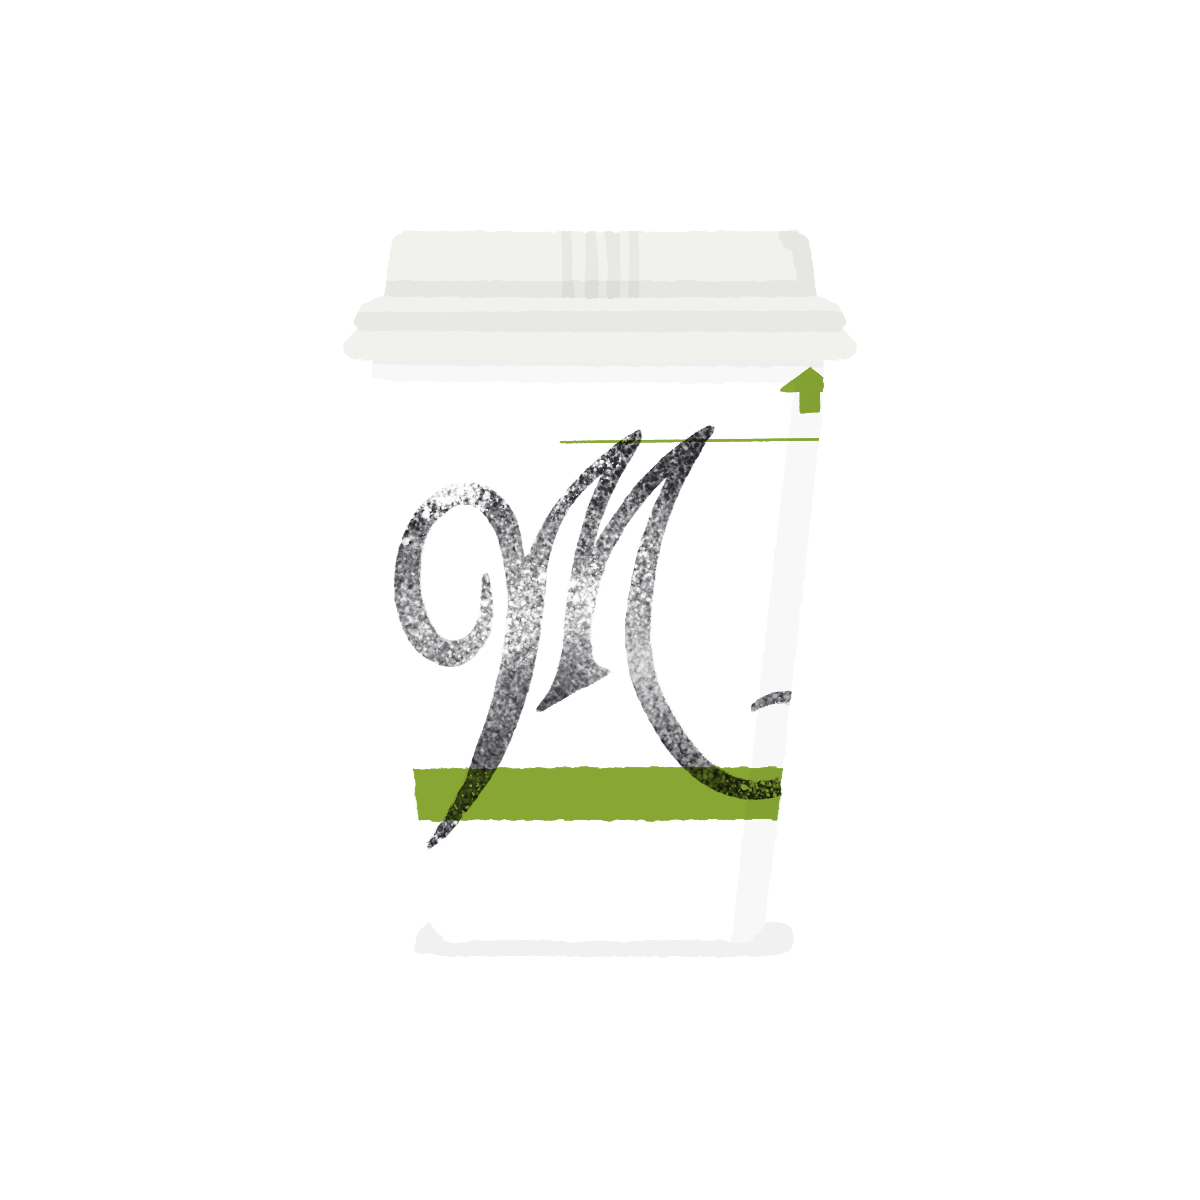 Menotti's coffee cup